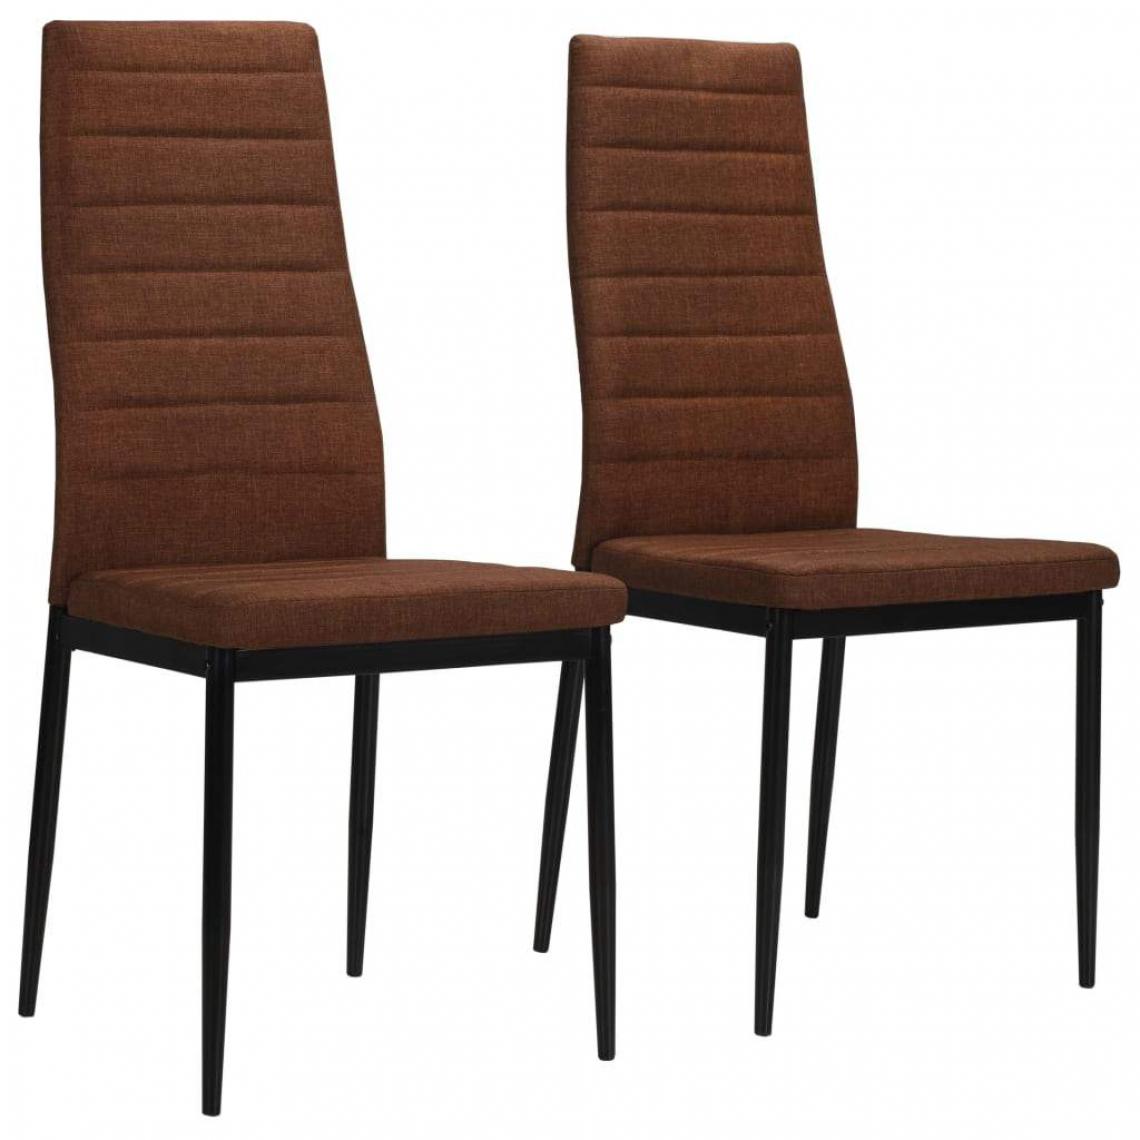 Decoshop26 - Lot de 2 chaises de salle à manger cuisine design moderne en tissu marron CDS020752 - Chaises